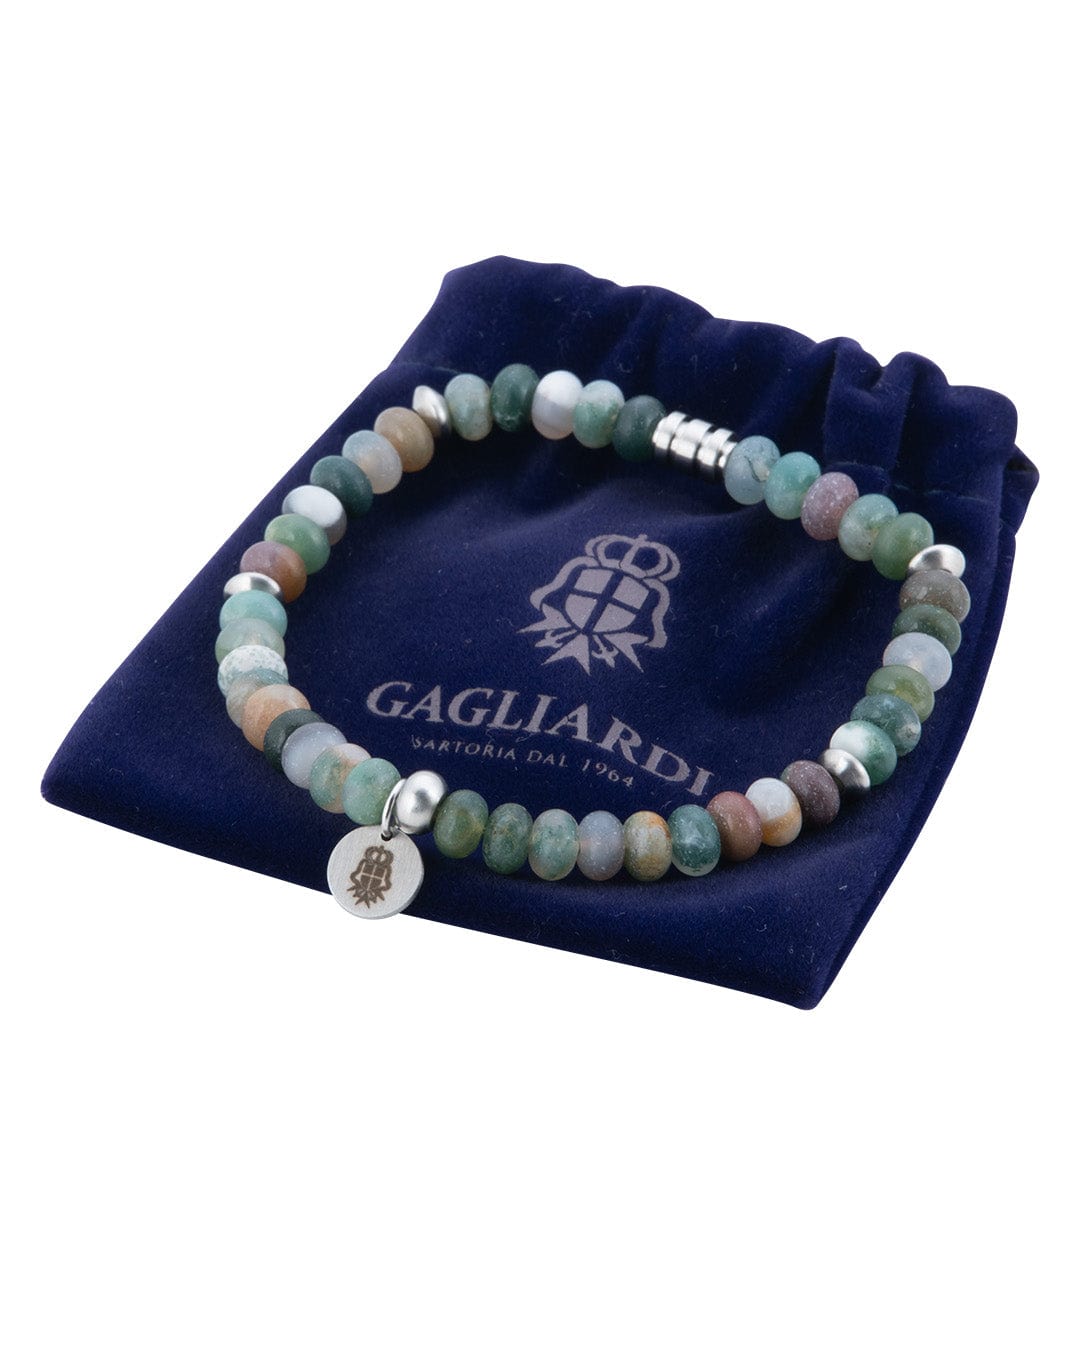 Gagliardi Bracelets Gagliardi Green Agate Stone Bead Bracelet With Charm